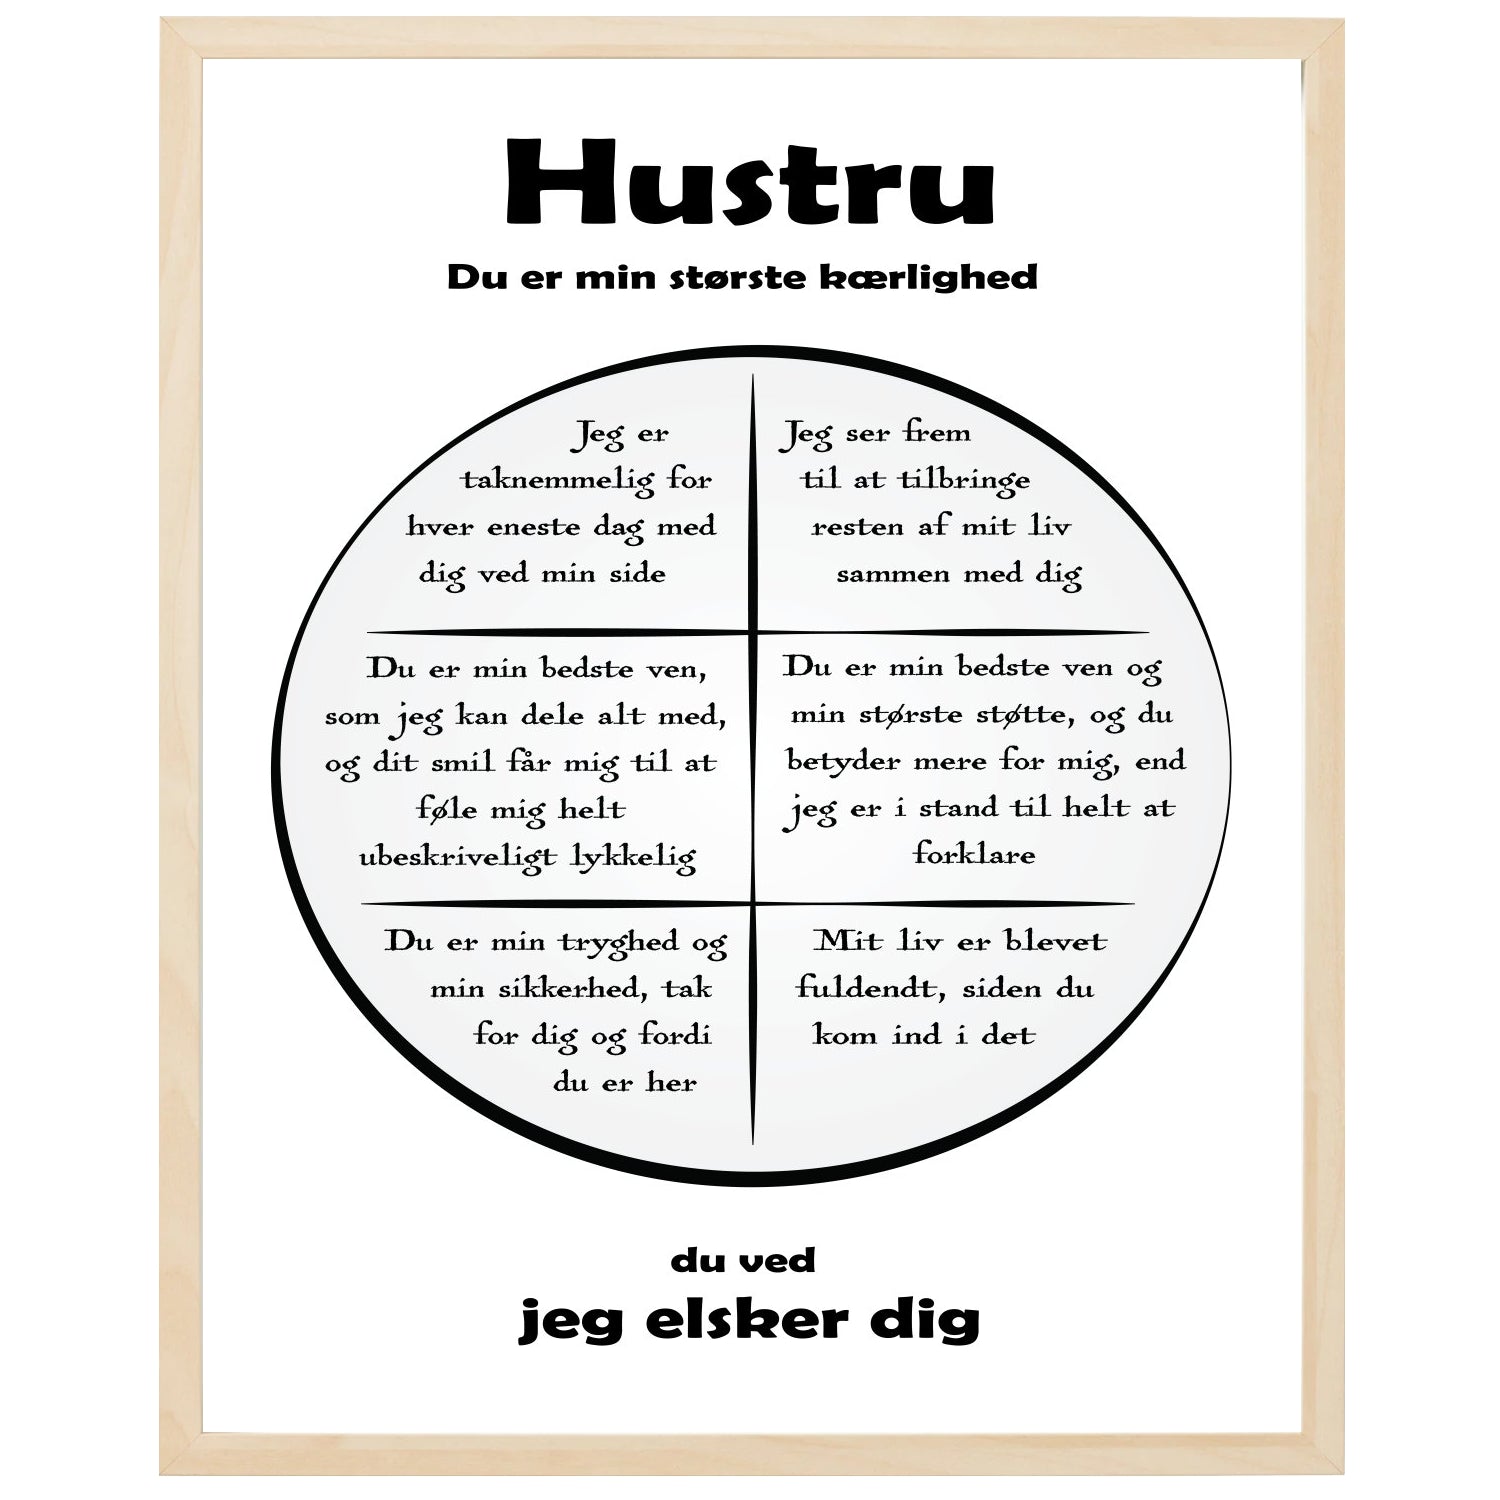 En plakat med overskriften Hustru, en rustik cirkel og indeni cirklen mange positive sætninger som beskriver en Hustru